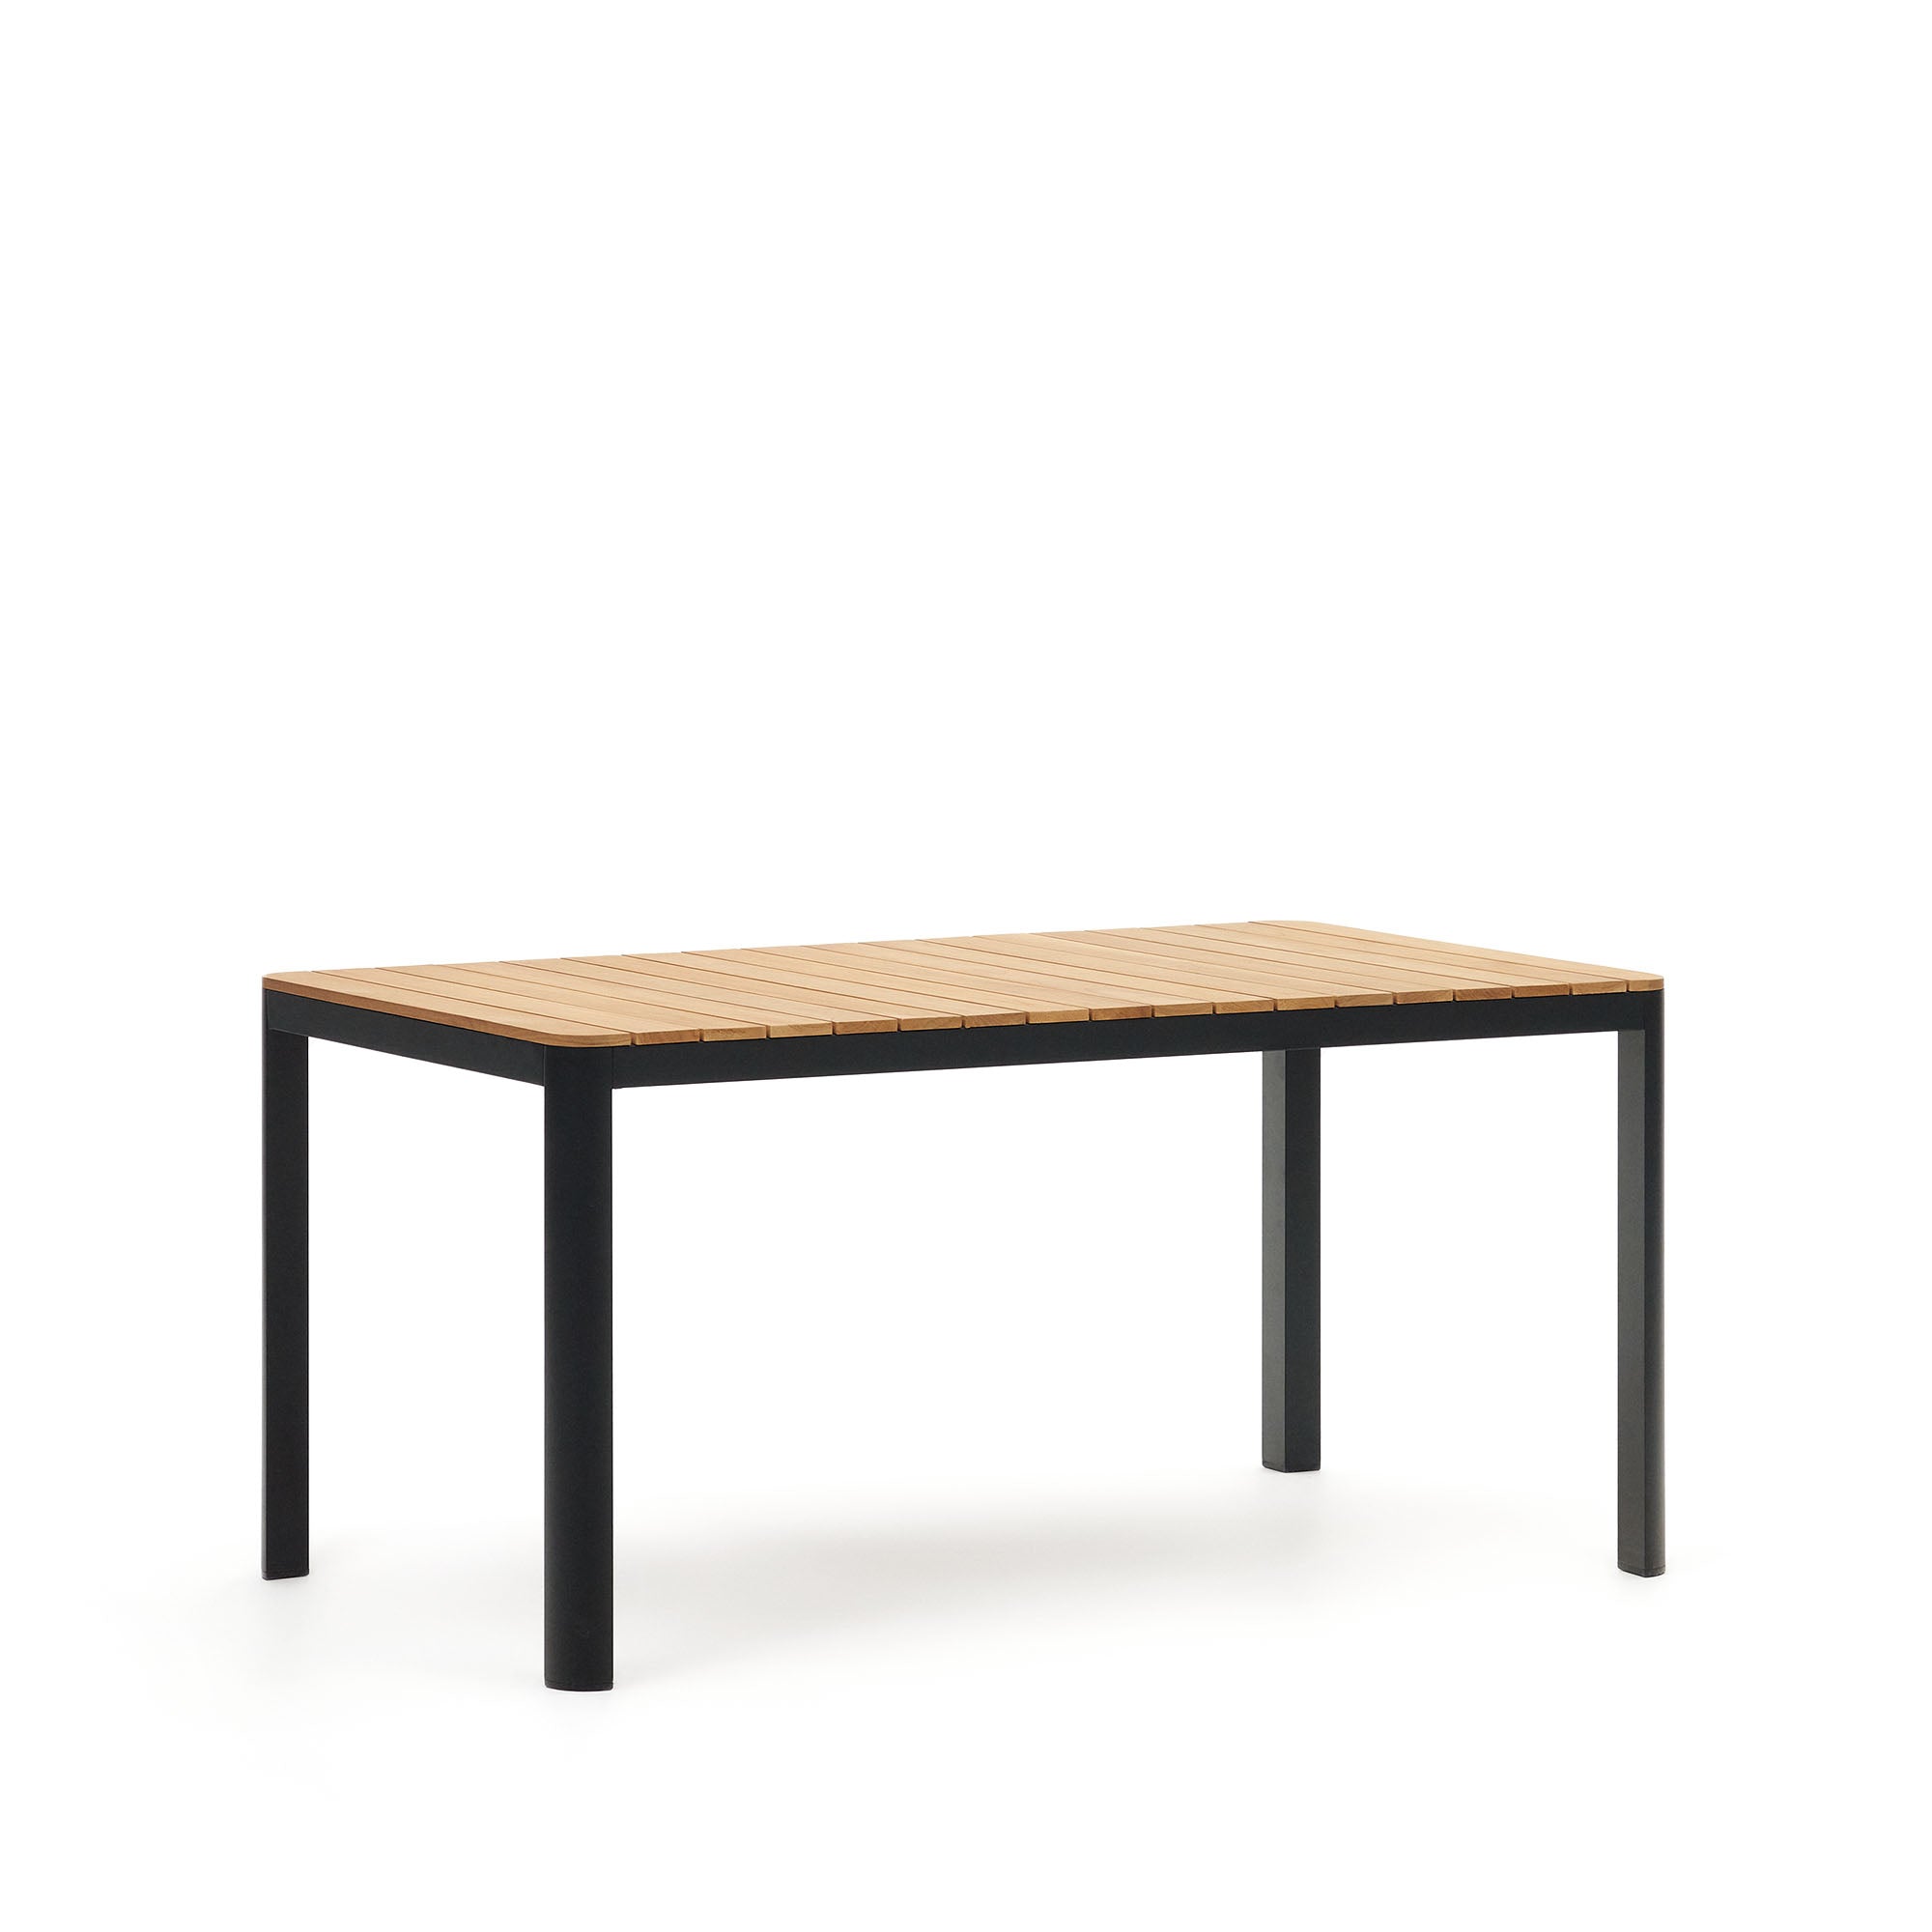 Bona alumínium és tömör teakfa asztal, 100%-ban kültéri használatra alkalmas, fekete kivitelben, 160 x 90 cm